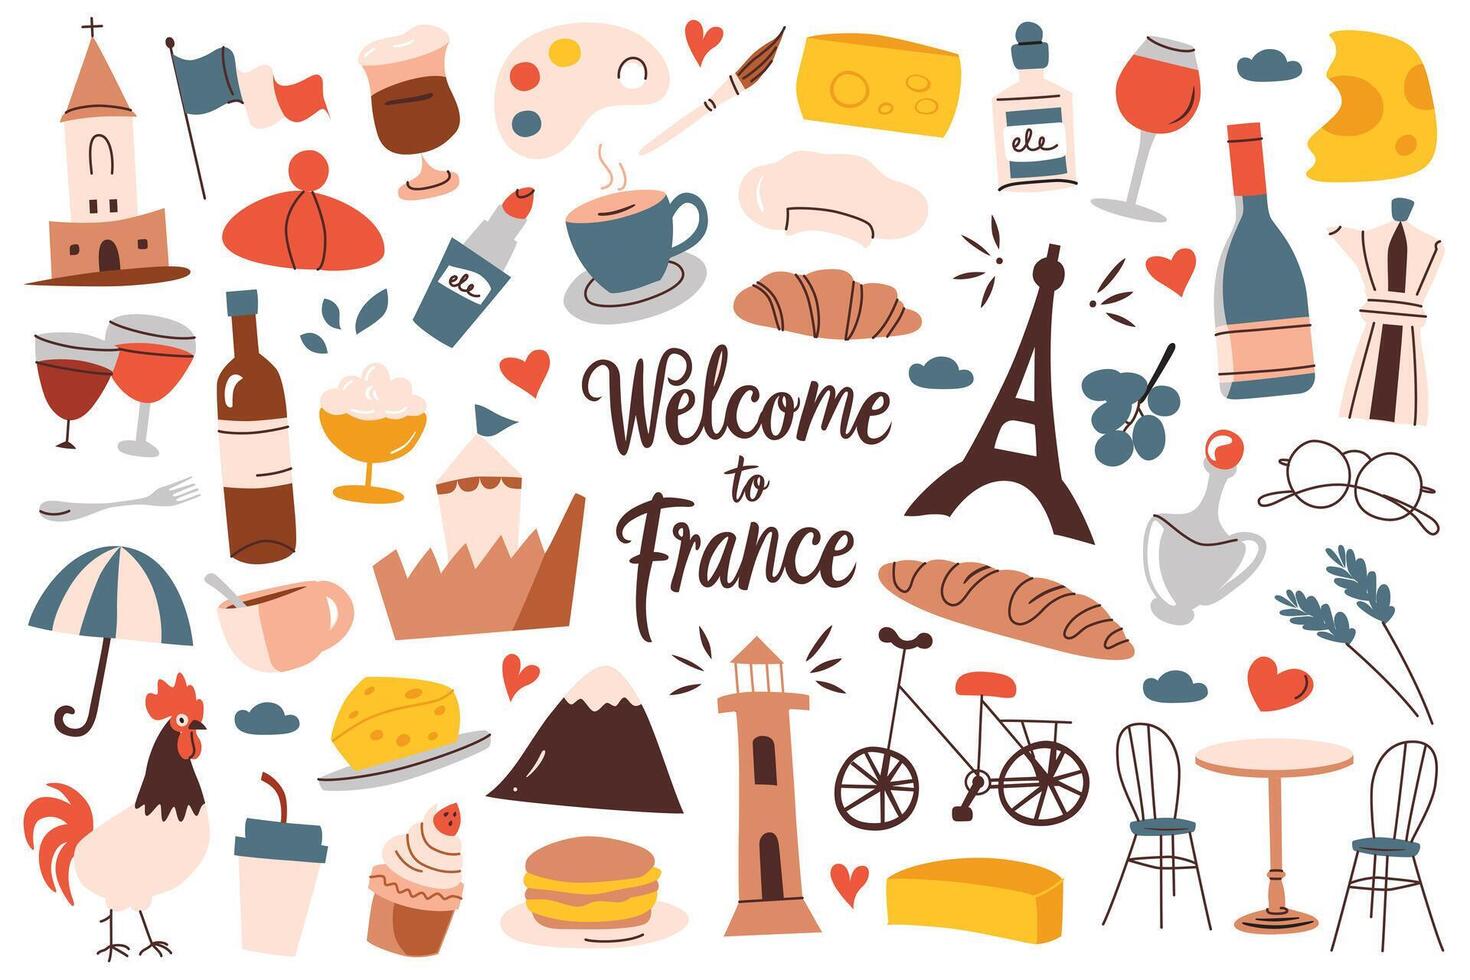 França símbolos mão desenhado coleção, ícones do eifel torre, queijo, croissant, viajando dentro Paris, turismo ilustrações, famoso francês passeio turístico, conjunto do vinho e bandeira rabiscos vetor